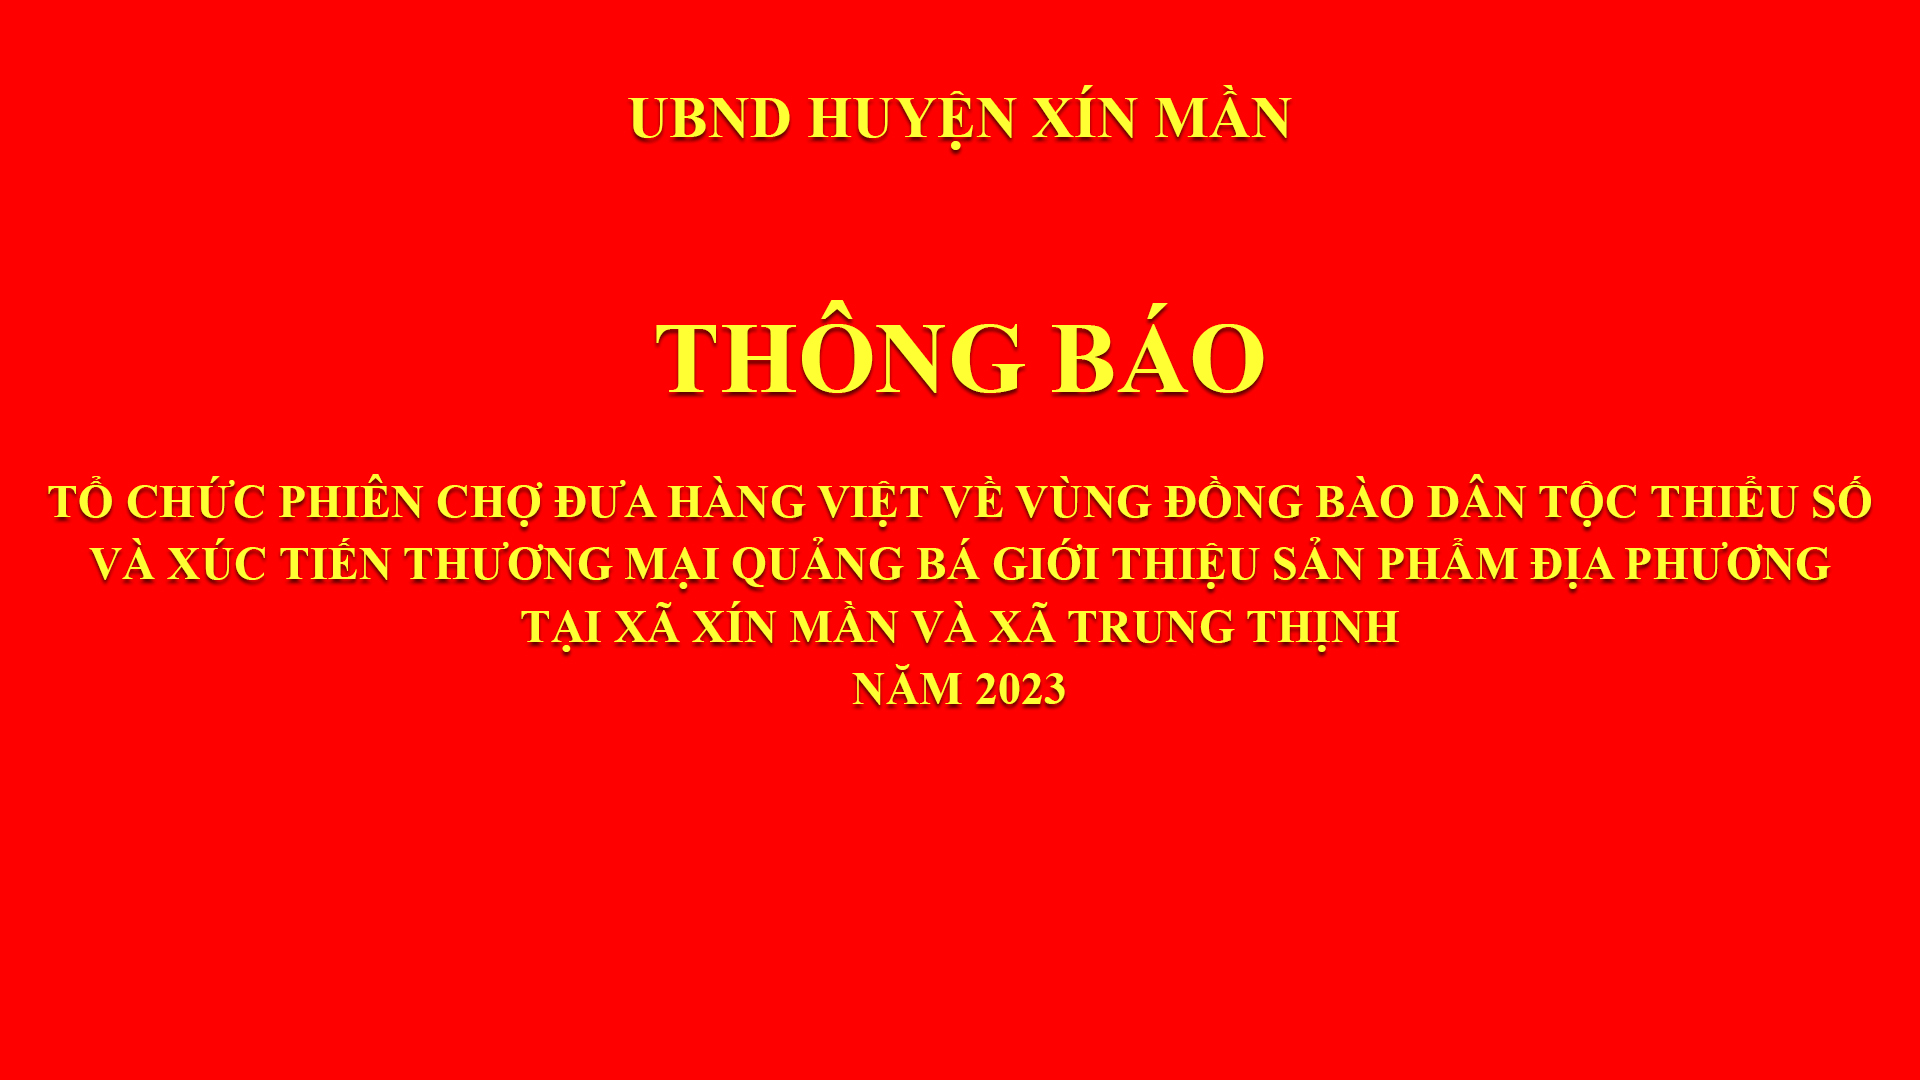 Thông báo kế hoạch tổ chức Phiên chợ đưa đưa hàng Việt về vùng đồng bào dân tộc thiểu số tại xã Xín Mần và xã Trung Thịnh năm 2023